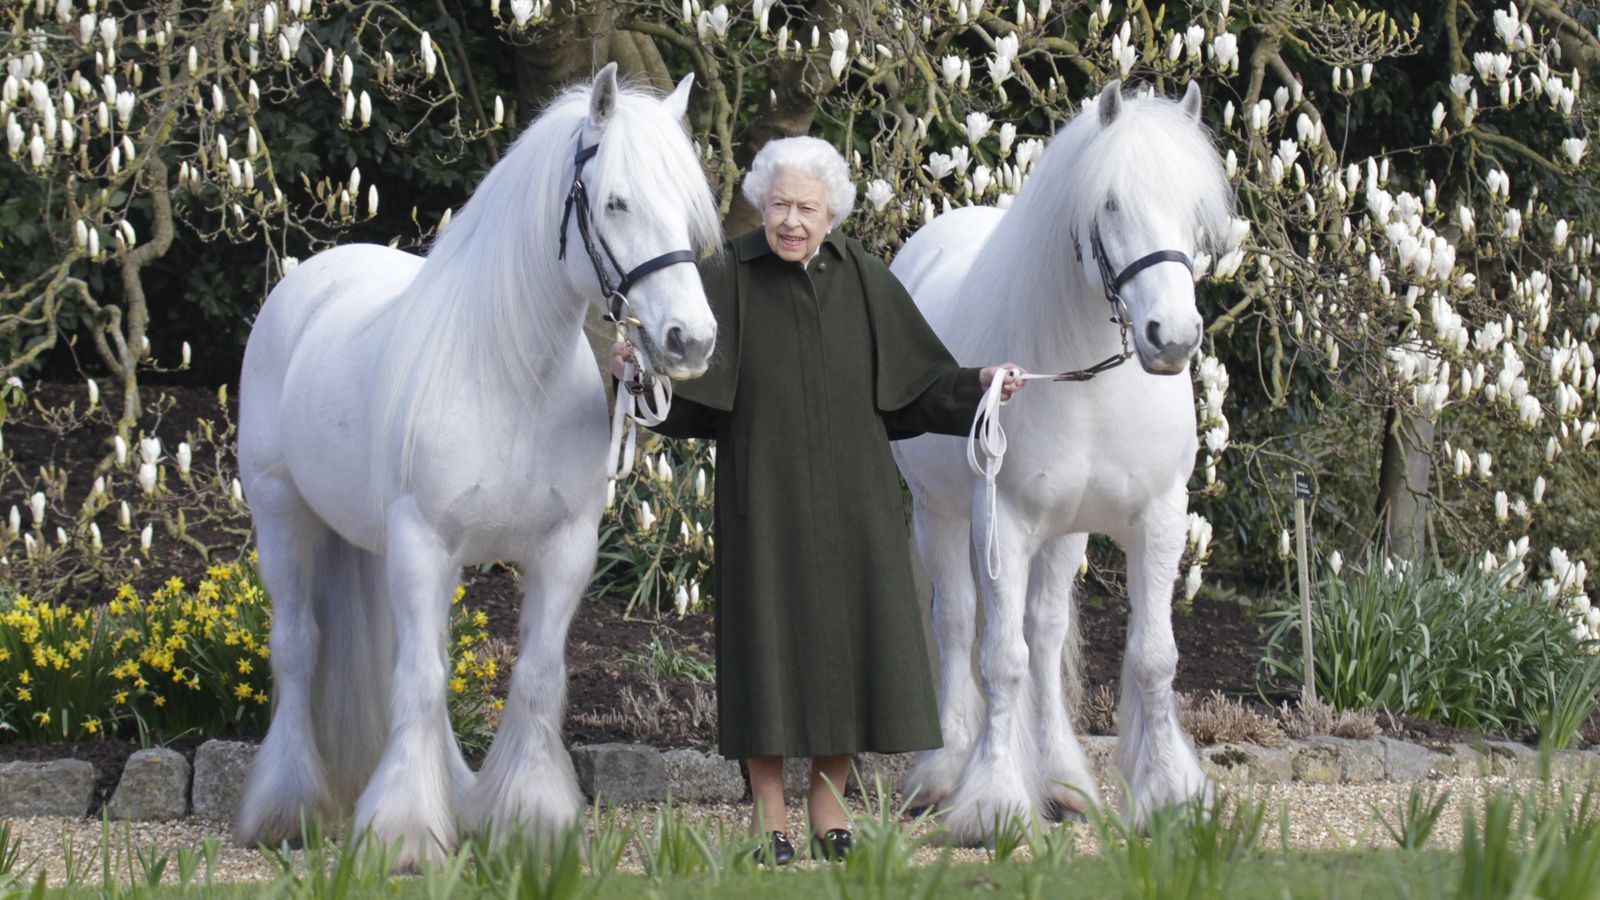 La reine célèbre son 96e anniversaire avec la publication d’une nouvelle photo pour marquer l’occasion |  Nouvelles du Royaume-Uni